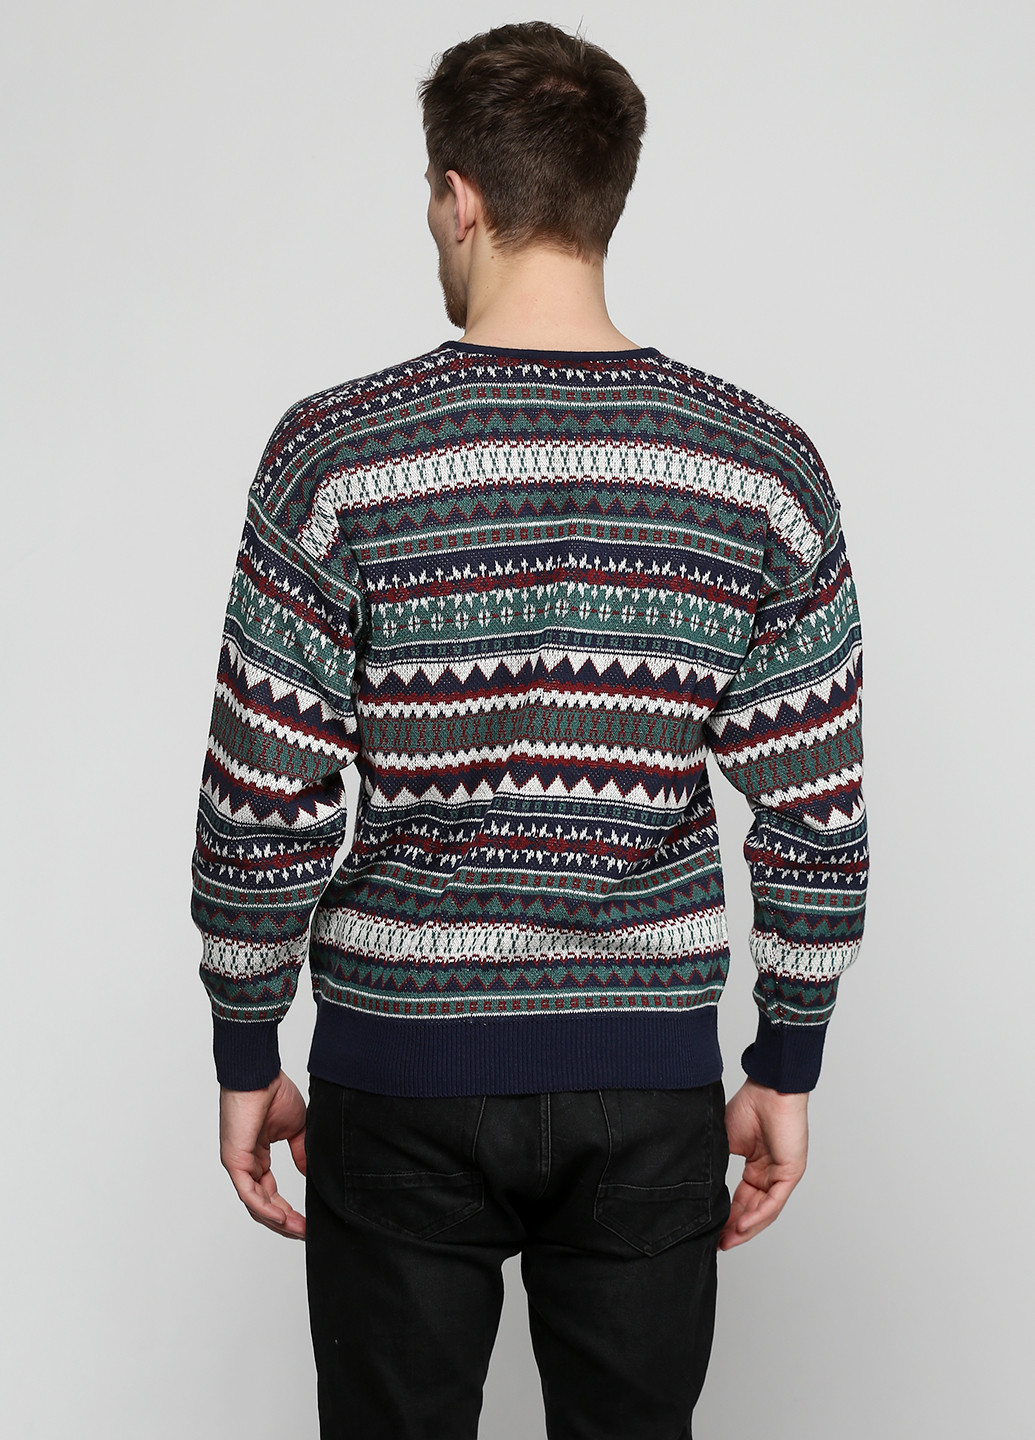 Комбинированный демисезонный пуловер пуловер Barbieri